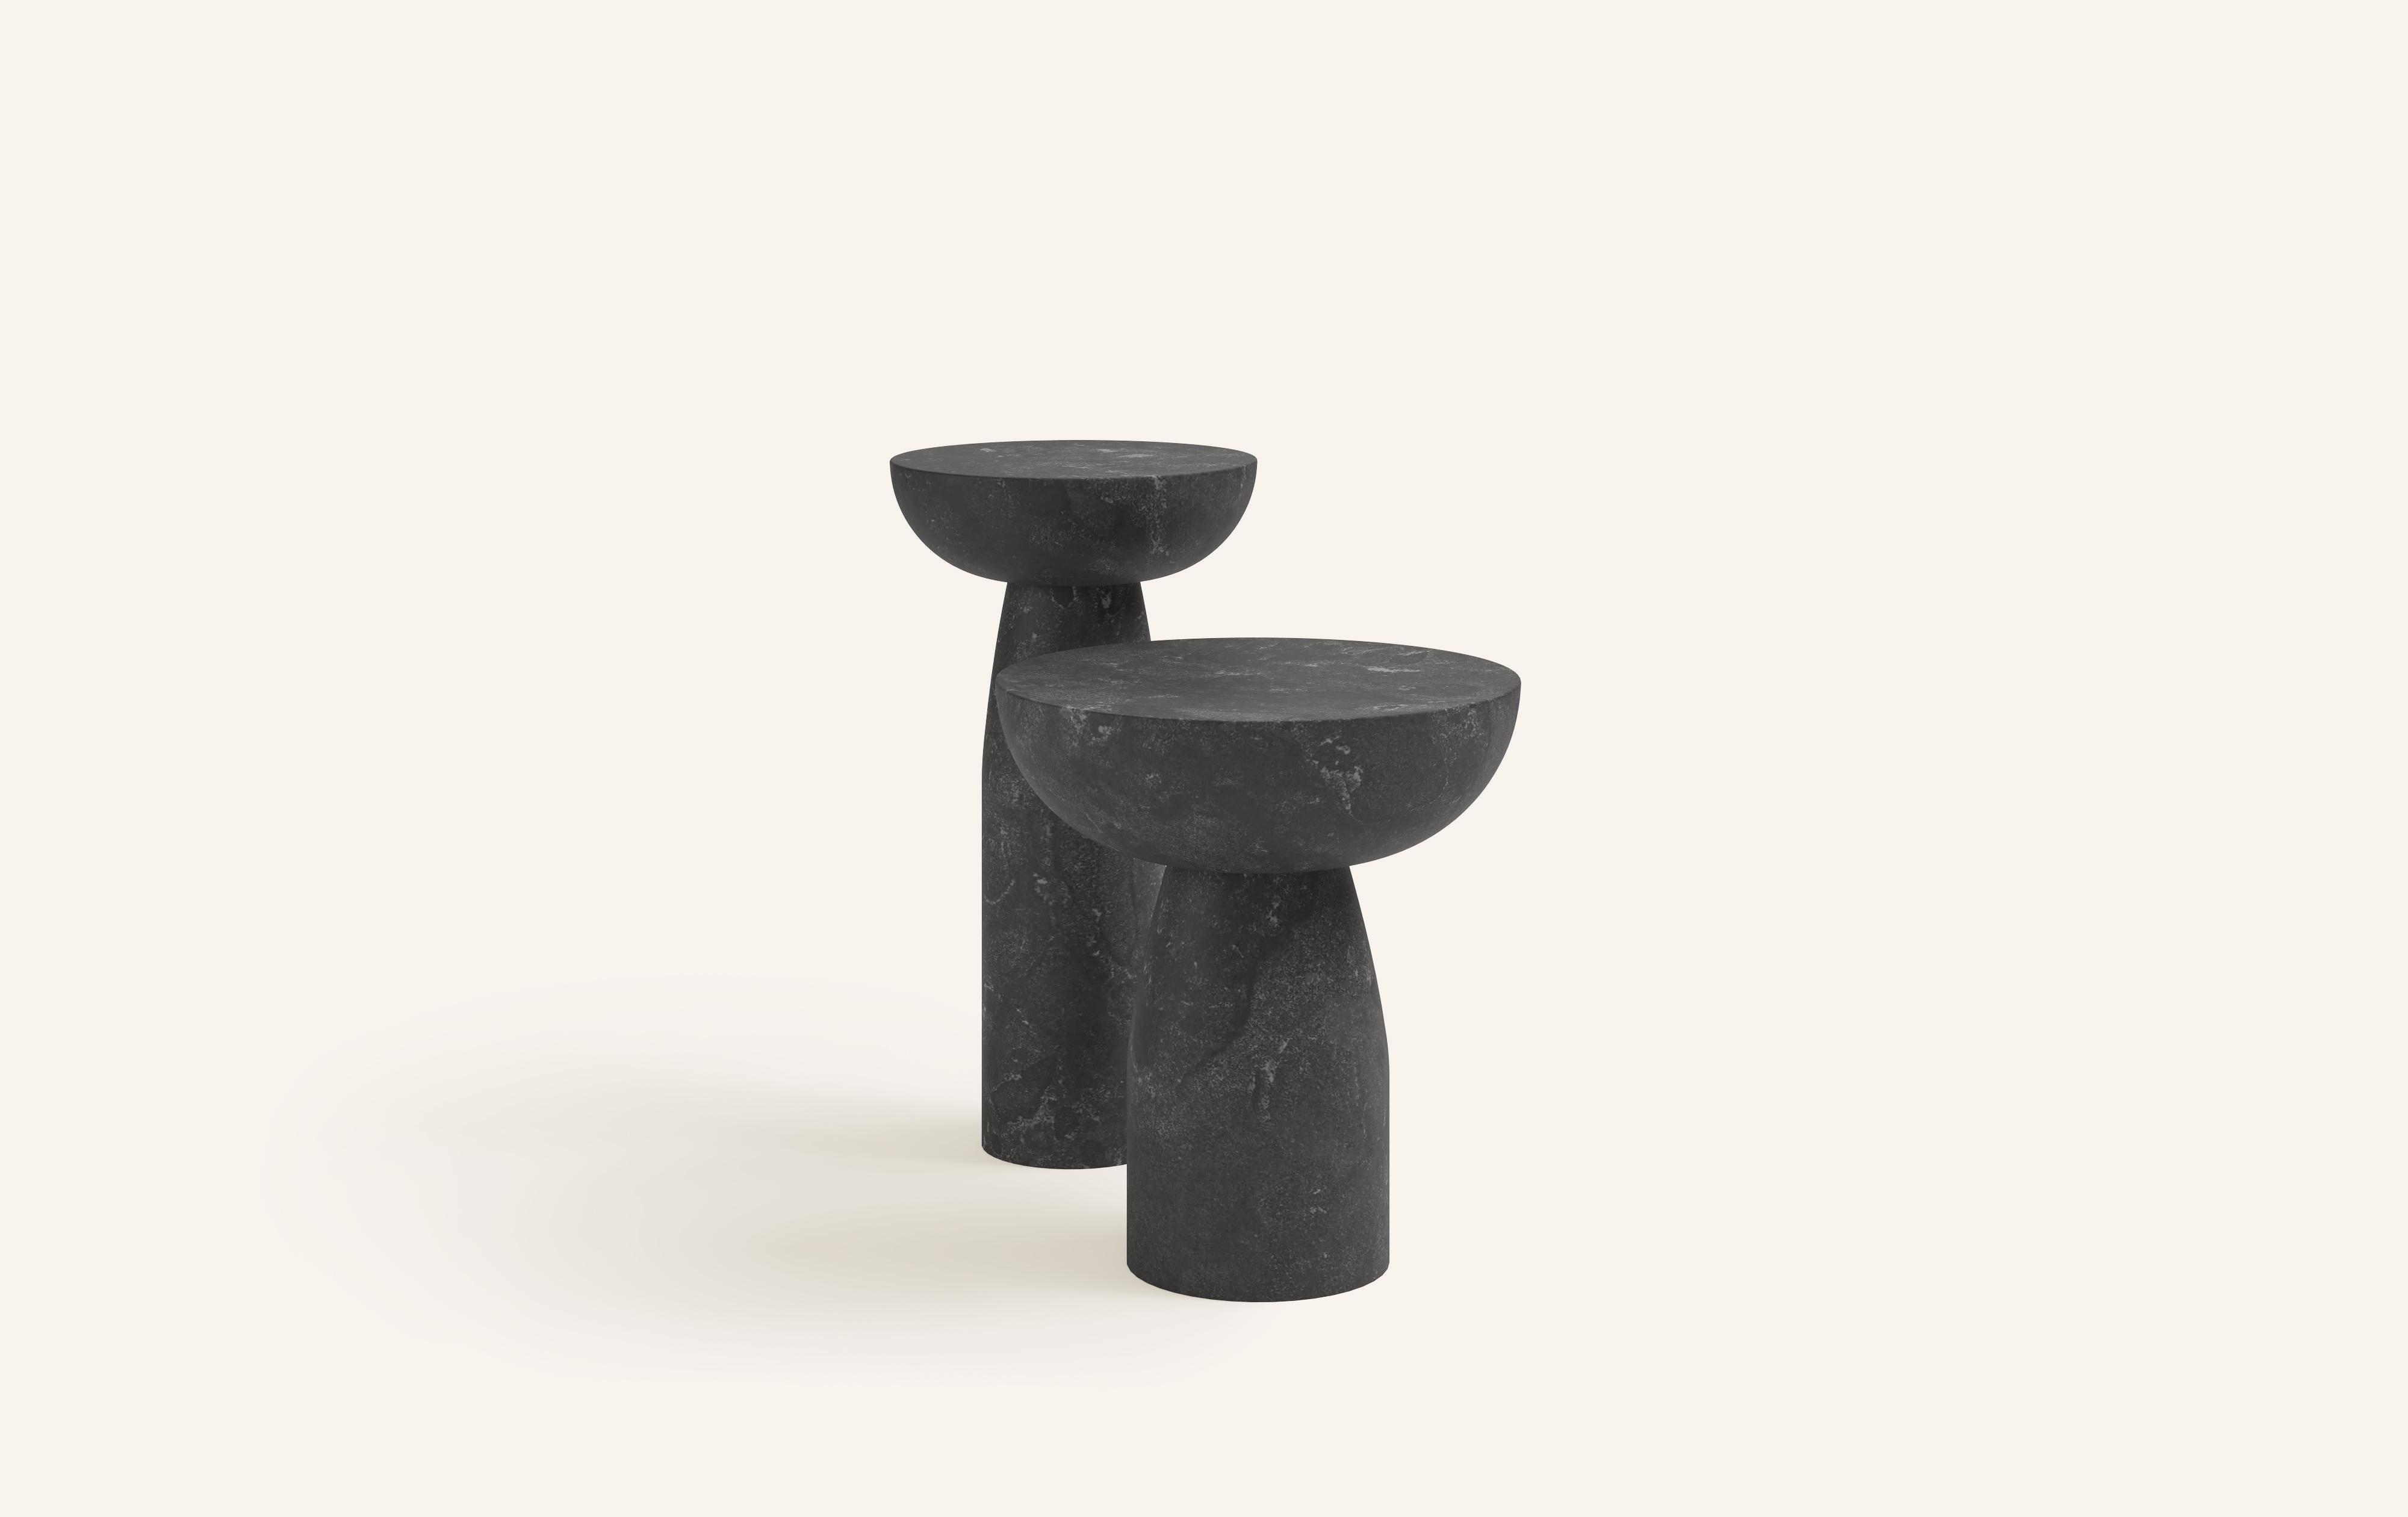 Organic Modern FORM(LA) Sfera Round Side Table 18”L x 18”W x 20”H Nero Petite Granite For Sale